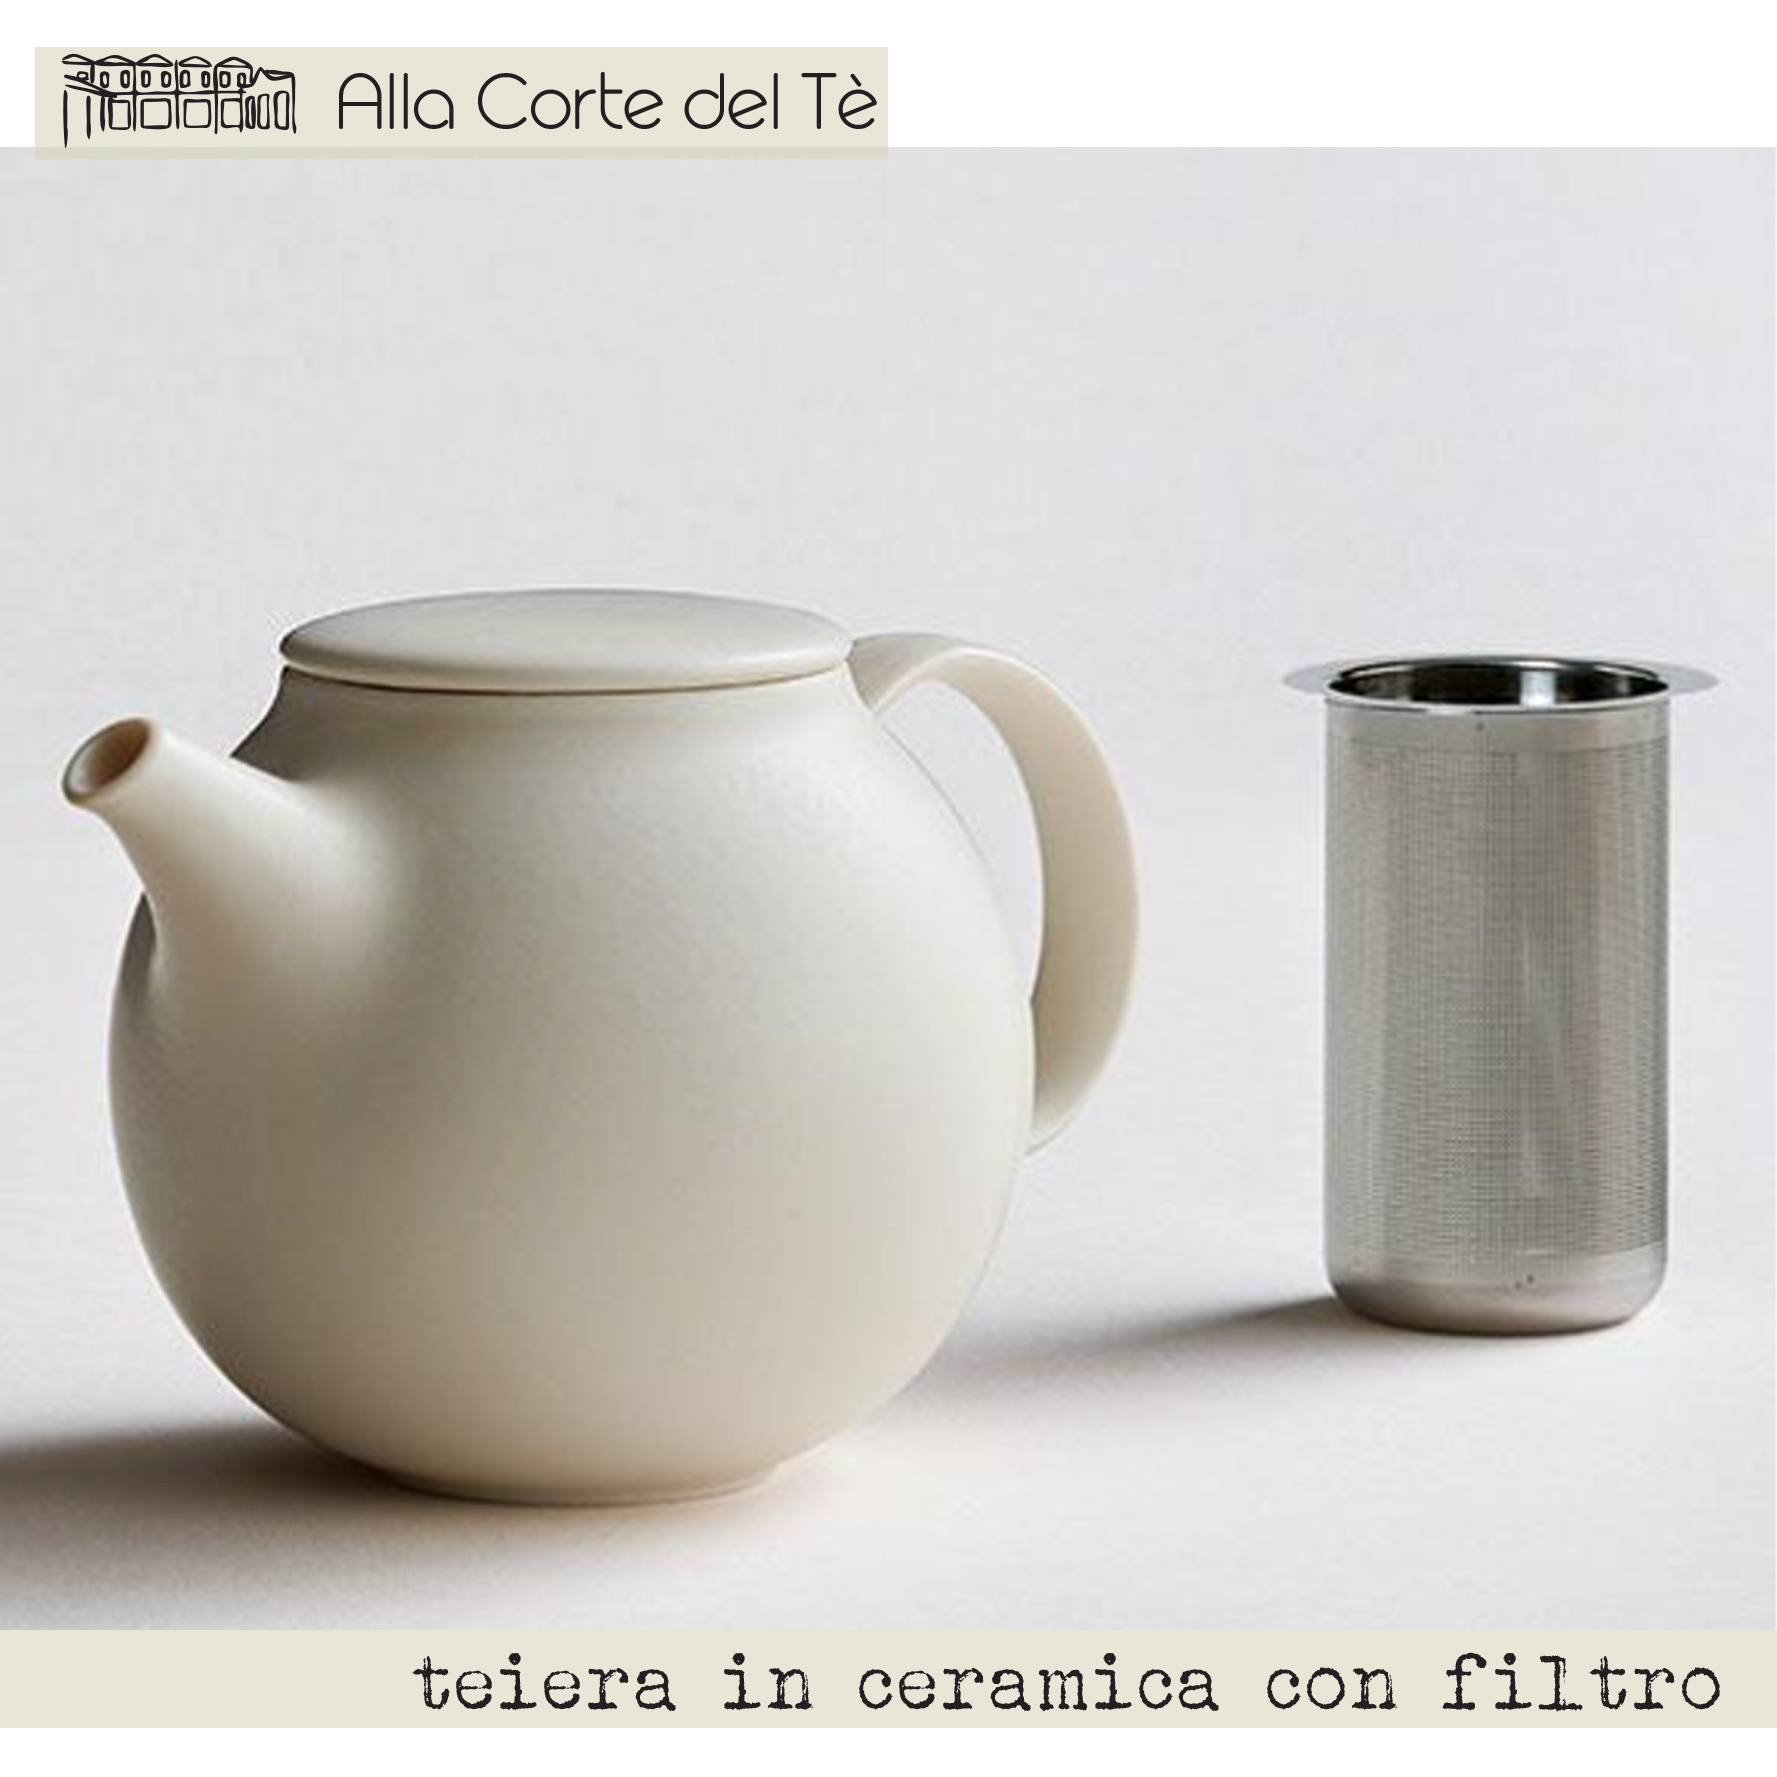 Teiera verde in ceramica con filtro - Alla Corte del Tè